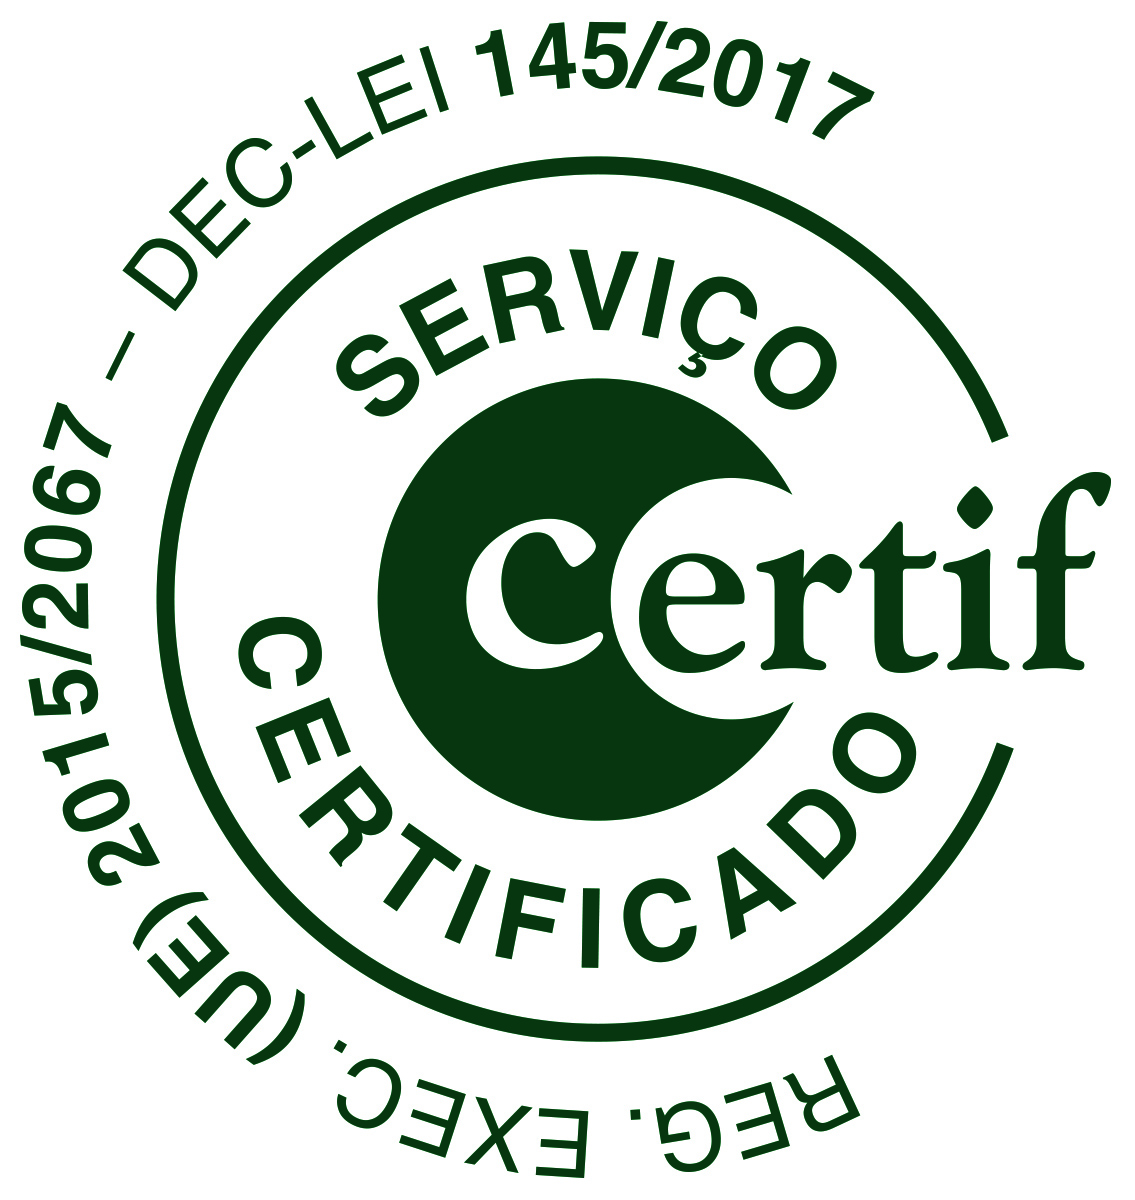 Certif RegExecDL145 2017